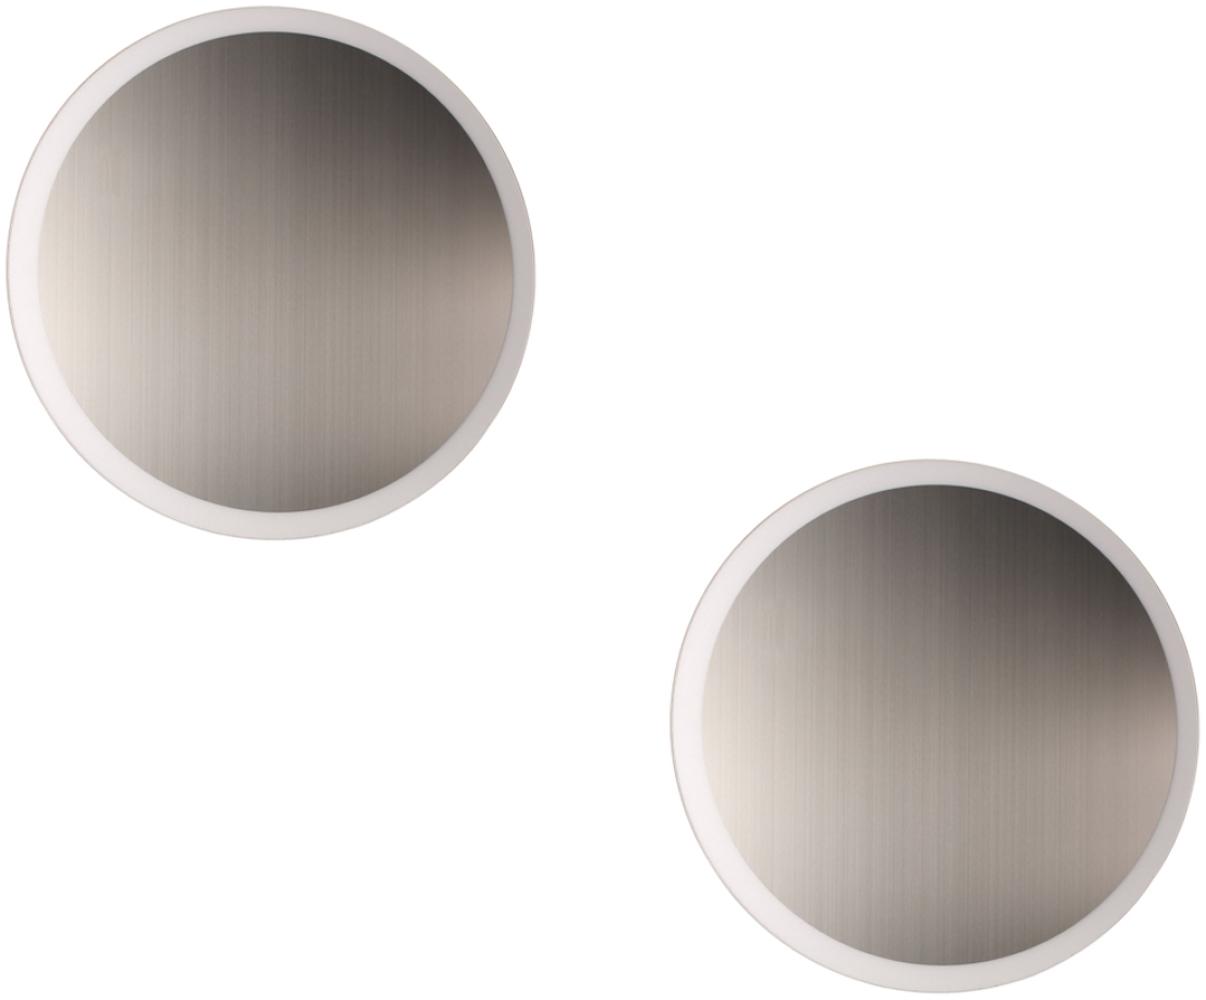 Runde LED Innenlampen - 2er SET für Wand & Decke, Spiegel Design in Silber, 50cm Bild 1